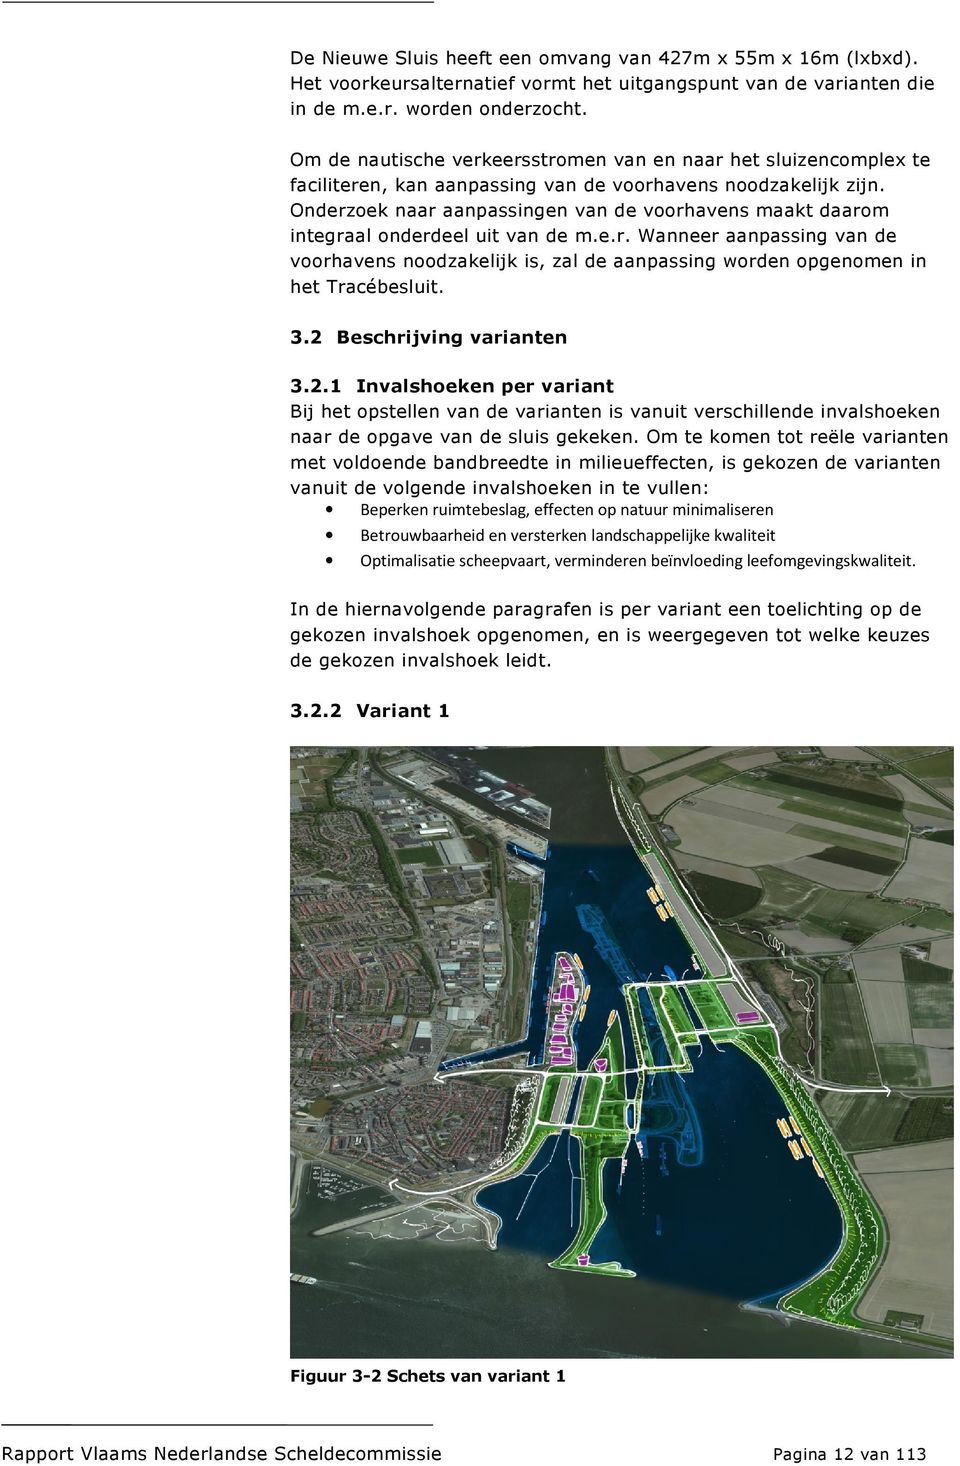 Onderzoek naar aanpassingen van de voorhavens maakt daarom integraal onderdeel uit van de m.e.r. Wanneer aanpassing van de voorhavens noodzakelijk is, zal de aanpassing worden opgenomen in het Tracébesluit.